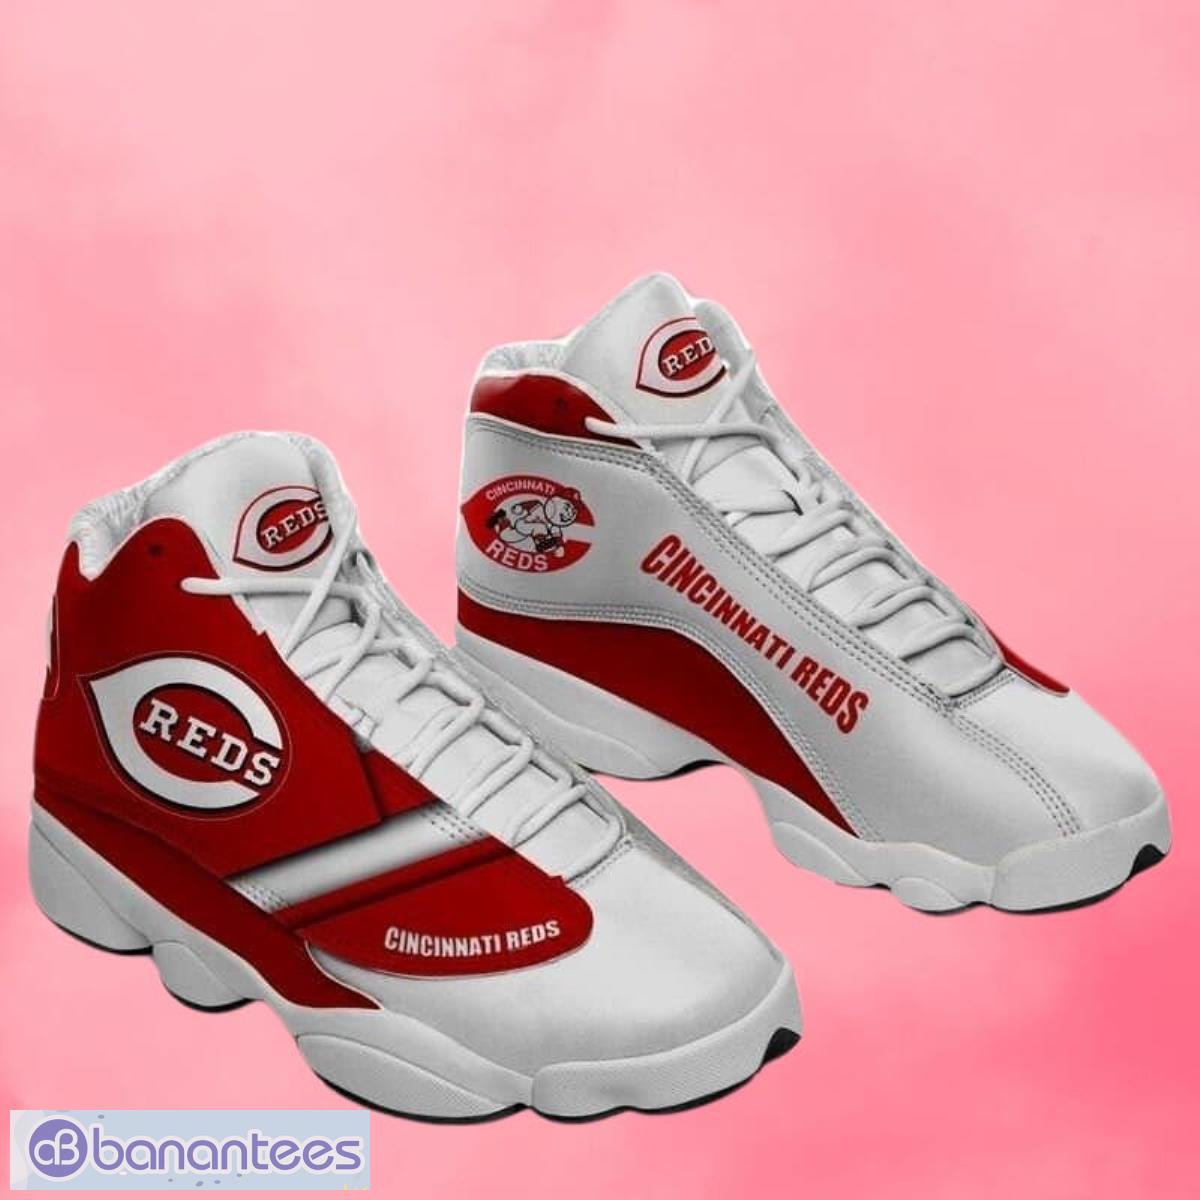 Cincinnati Reds Air Jordan 4 Sneakers Shoes For Men And Women